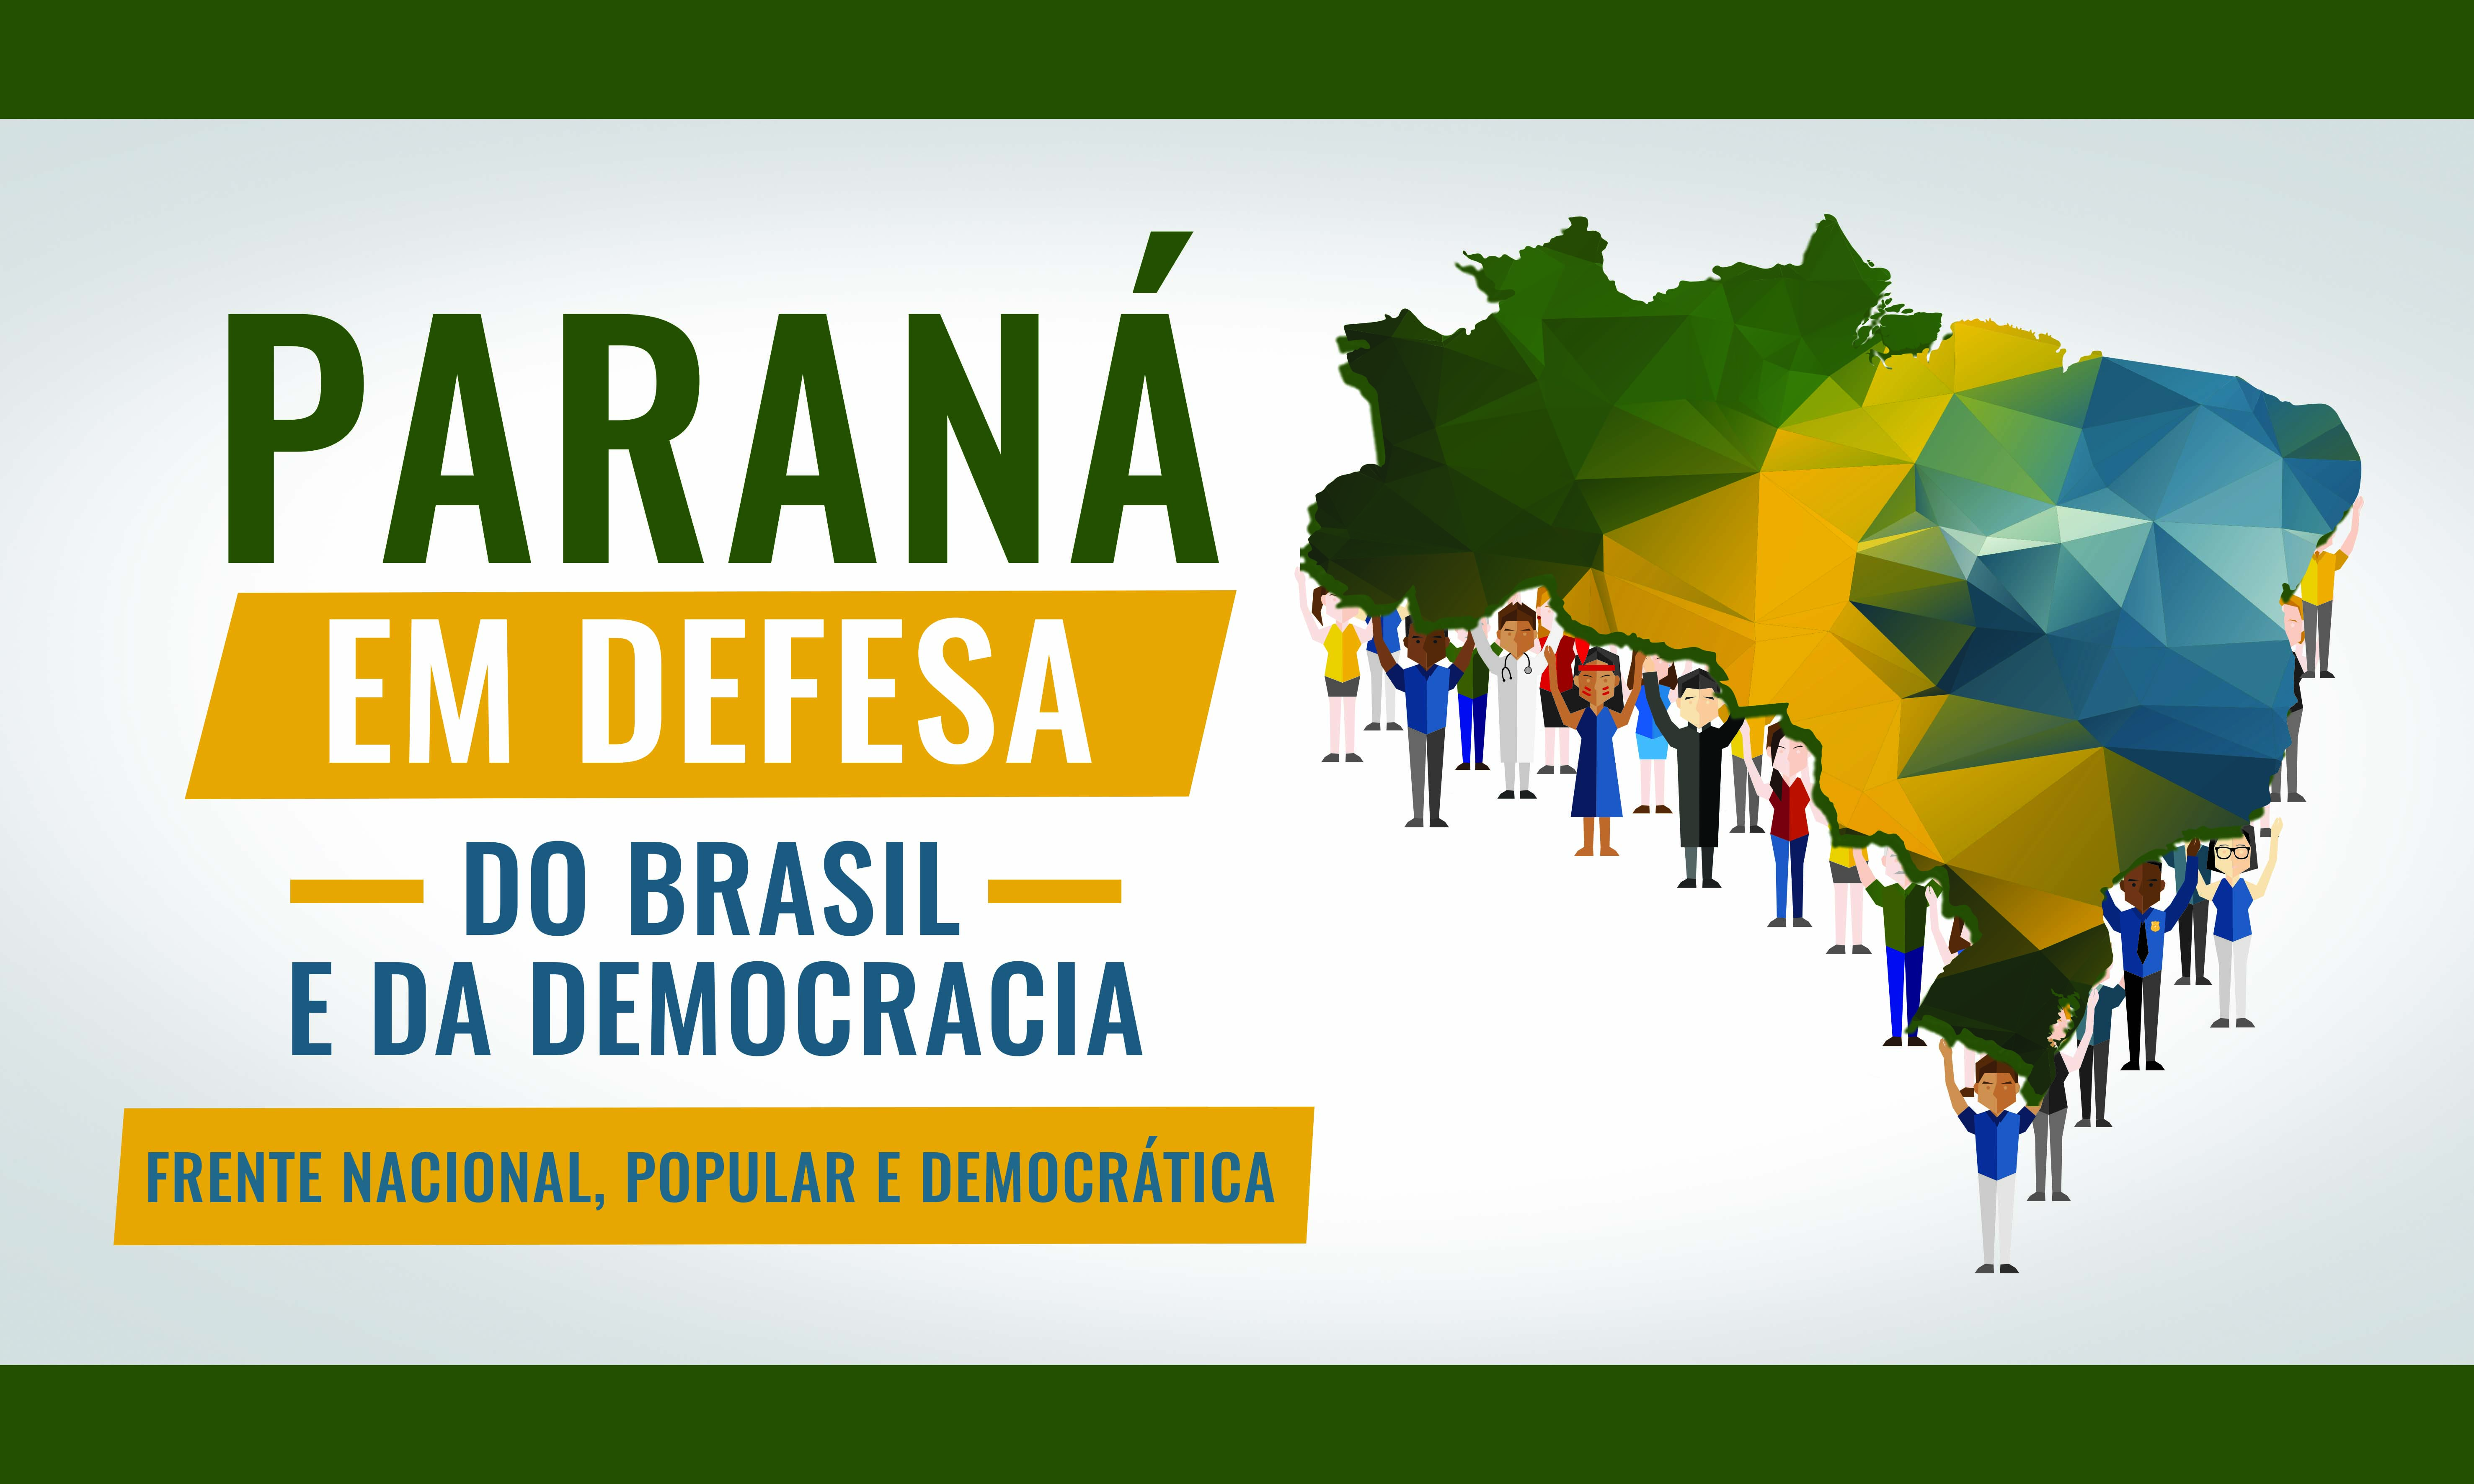 Paraná em defesa do Brasil, da democracia, da soberania nacional e dos direitos do povo